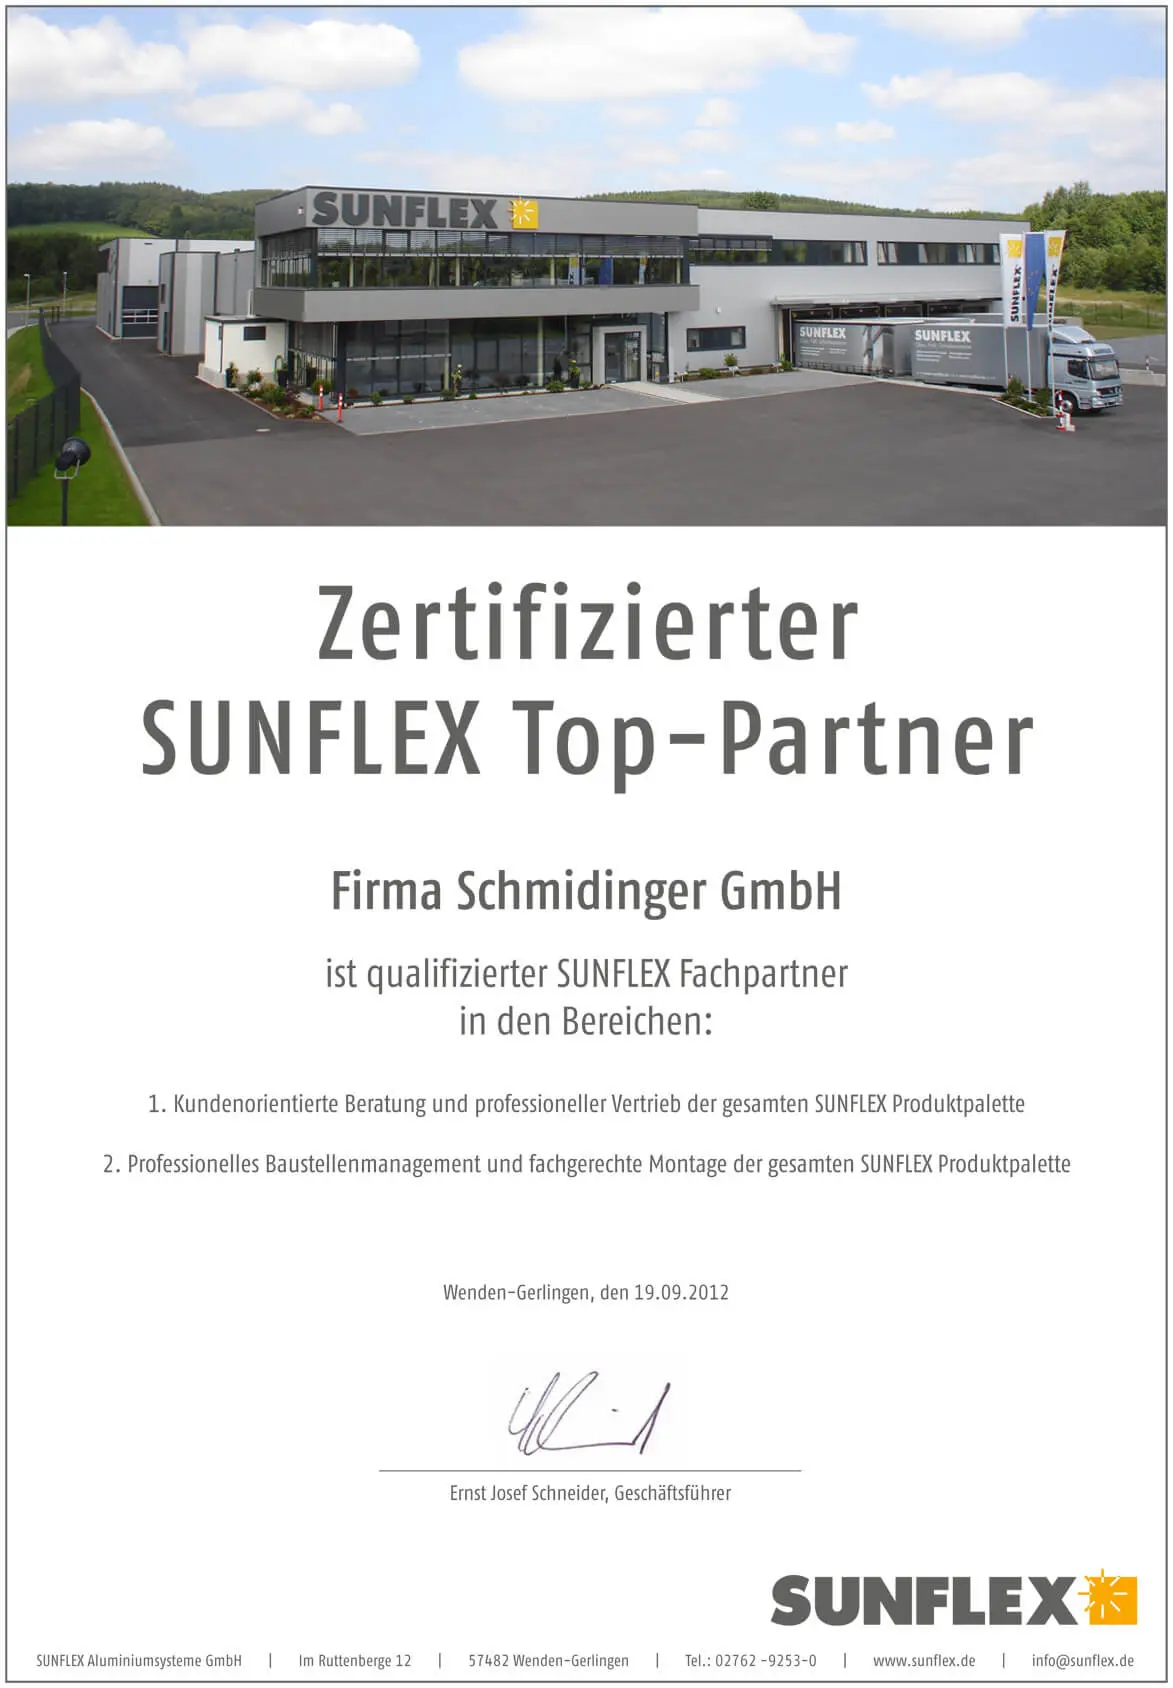 Sunflex Top-Partner Zertifikat